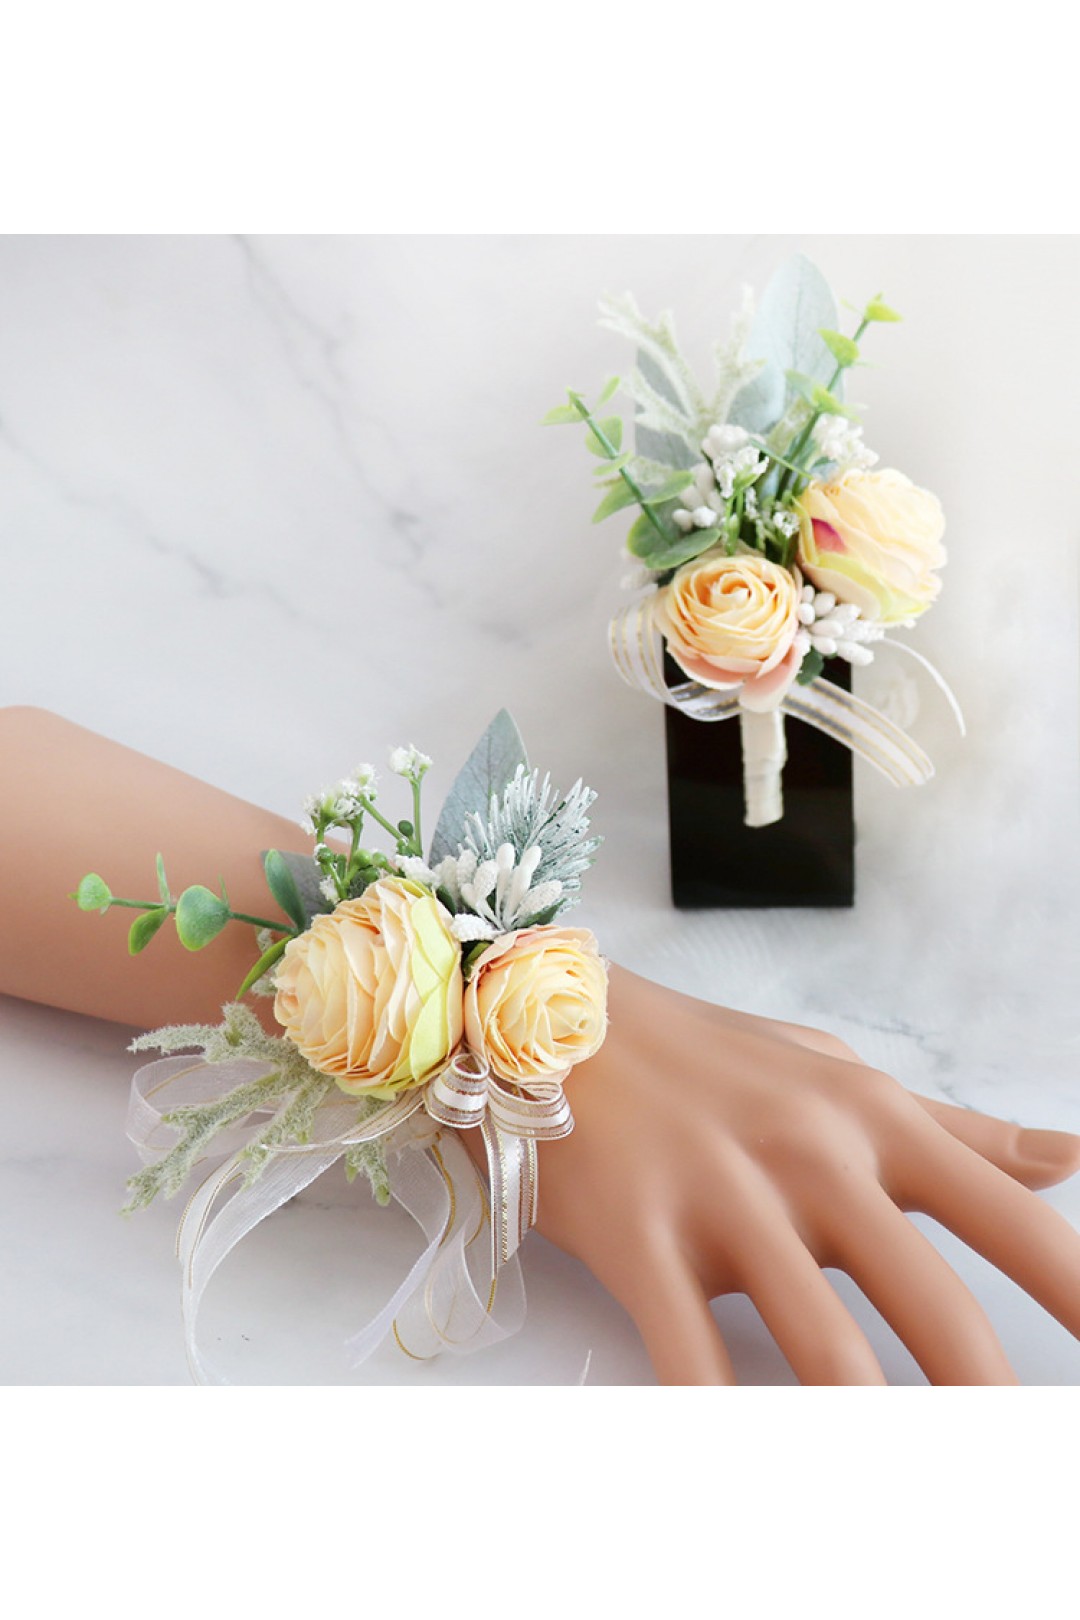 Details about   Artificial Tea Flower Bouquet Wedding Party Boutonniere Men Women Corsage 